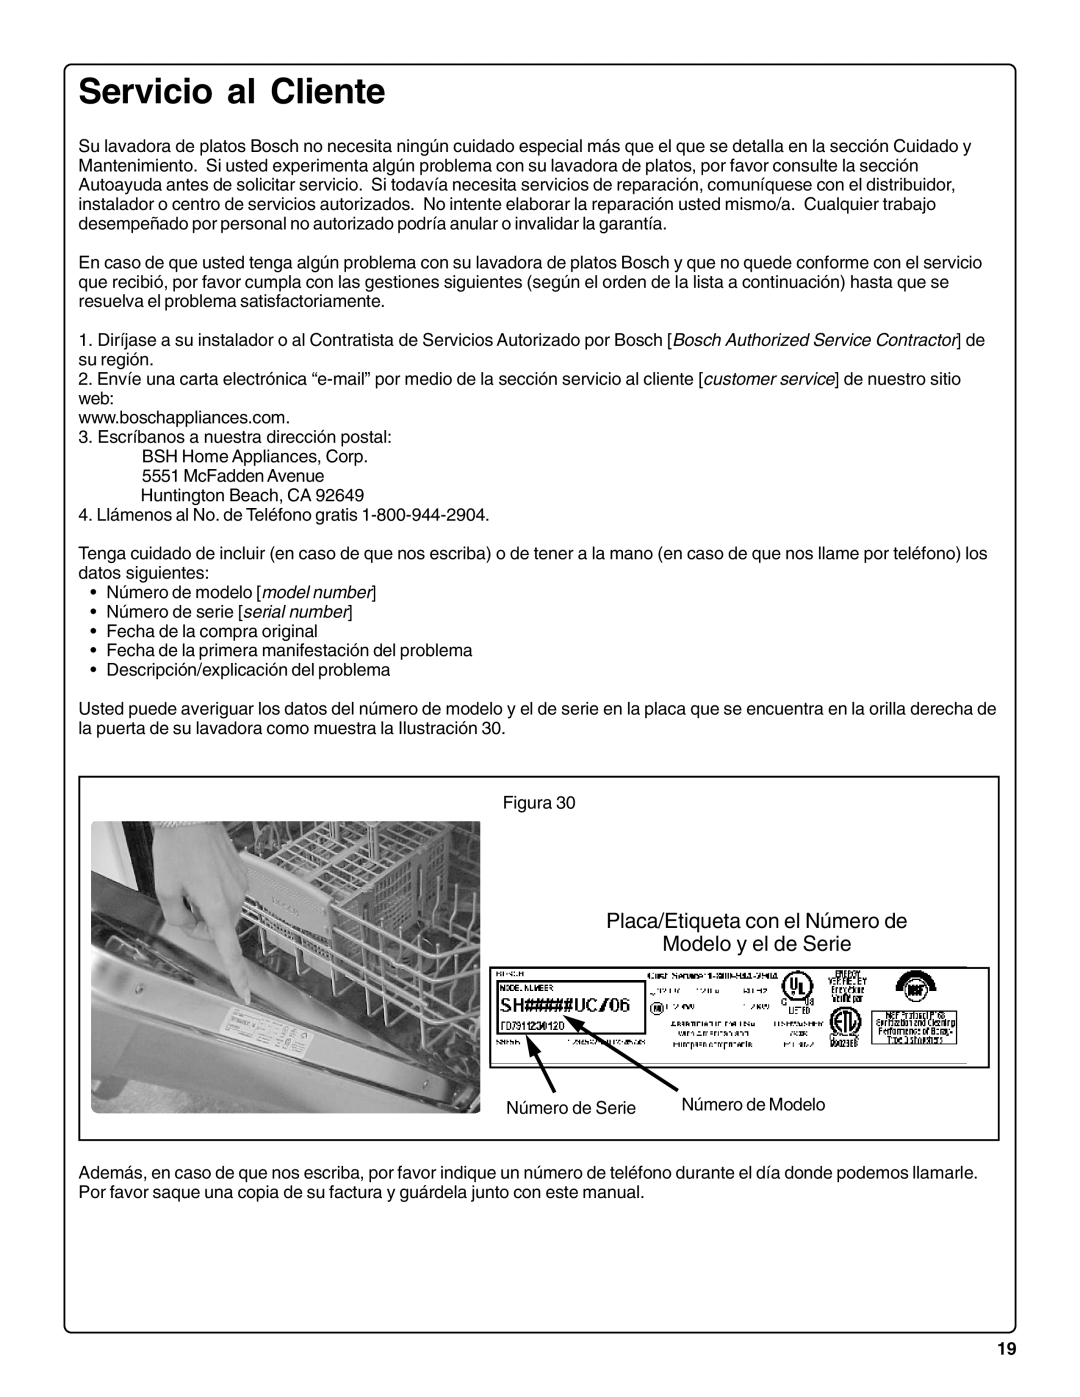 Bosch Appliances sHe43C installation instructions Servicio al Cliente, Placa/Etiqueta con el Número de Modelo y el de Serie 